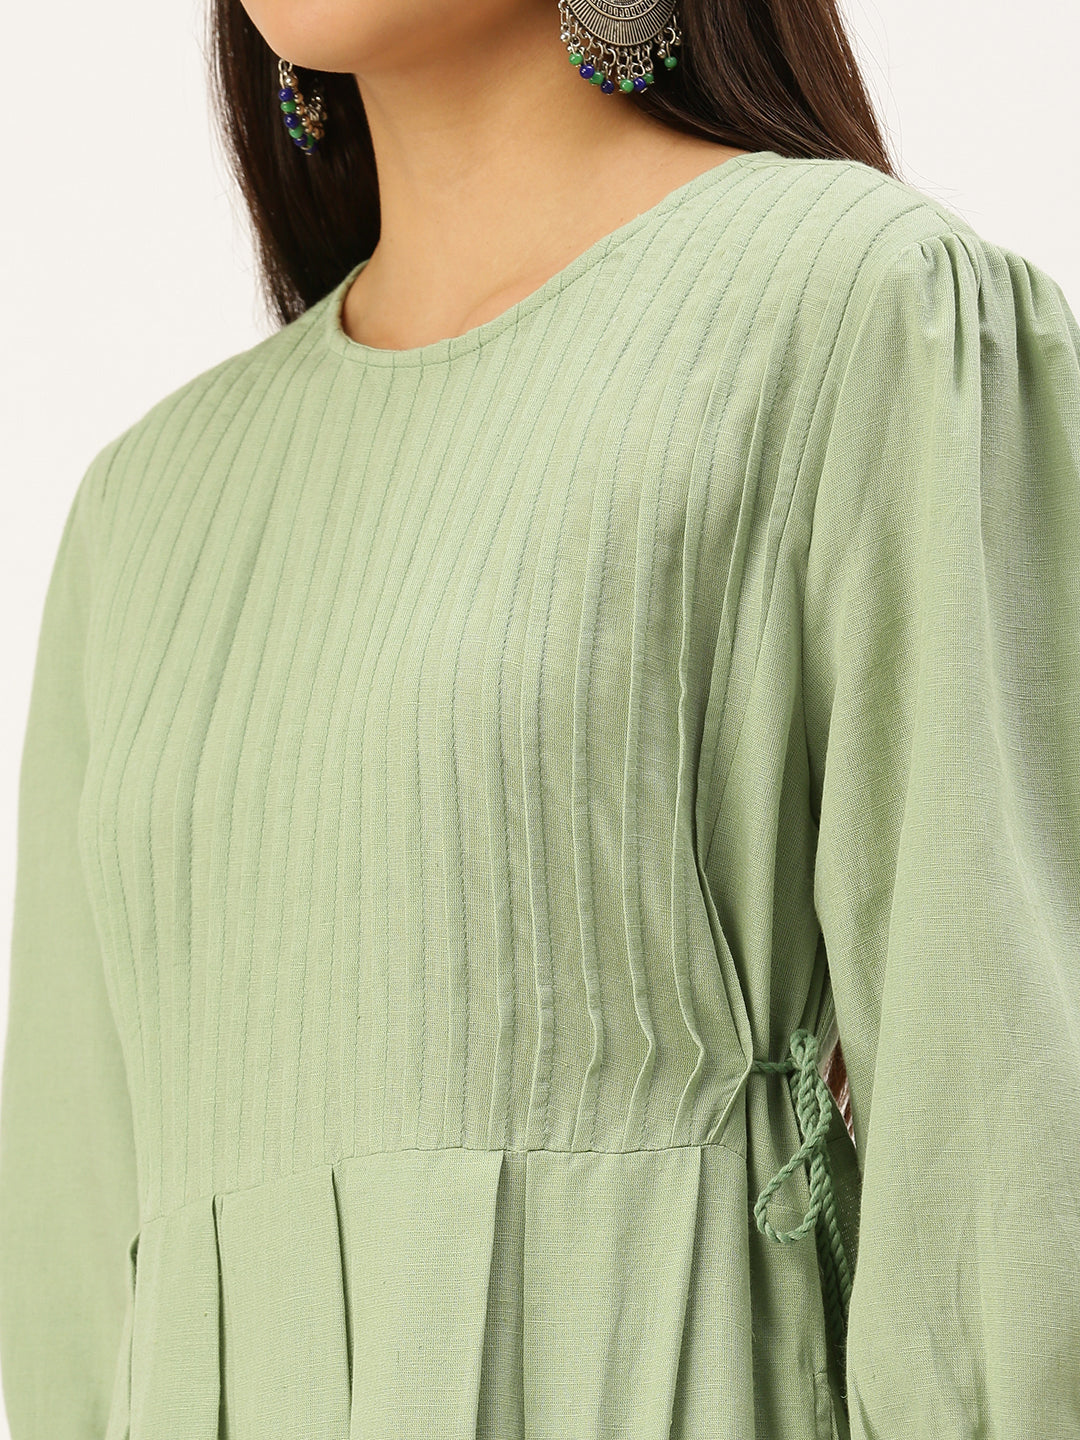 Women's Green Embroidered A-Line Kurtas